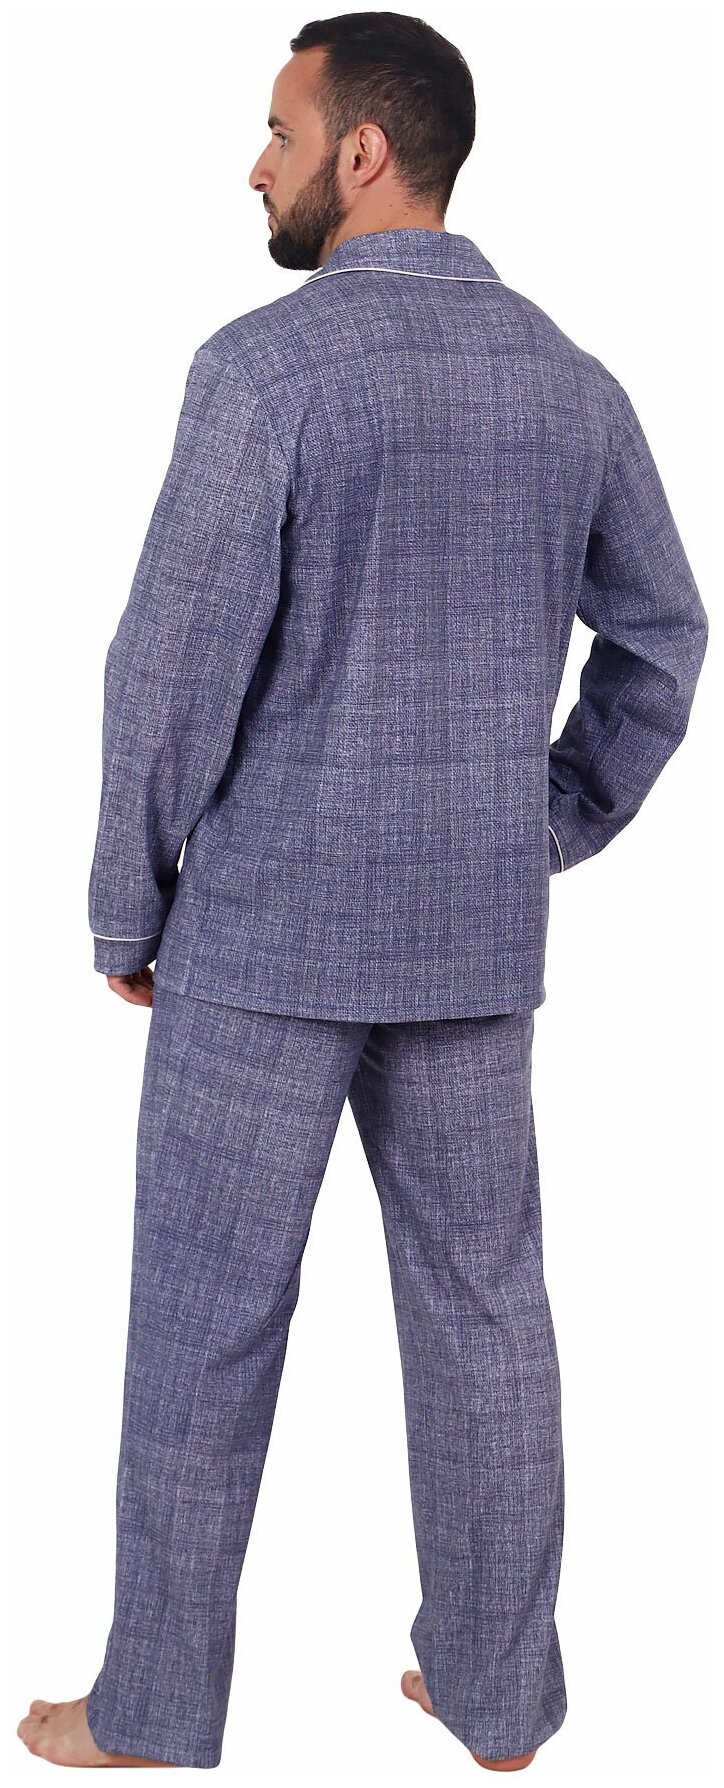 Мужская пижама Вояж Синий размер 54 Кулирка Оптима трикотаж рубашка на пуговицах с отложным воротником брюки с карманами - фотография № 2